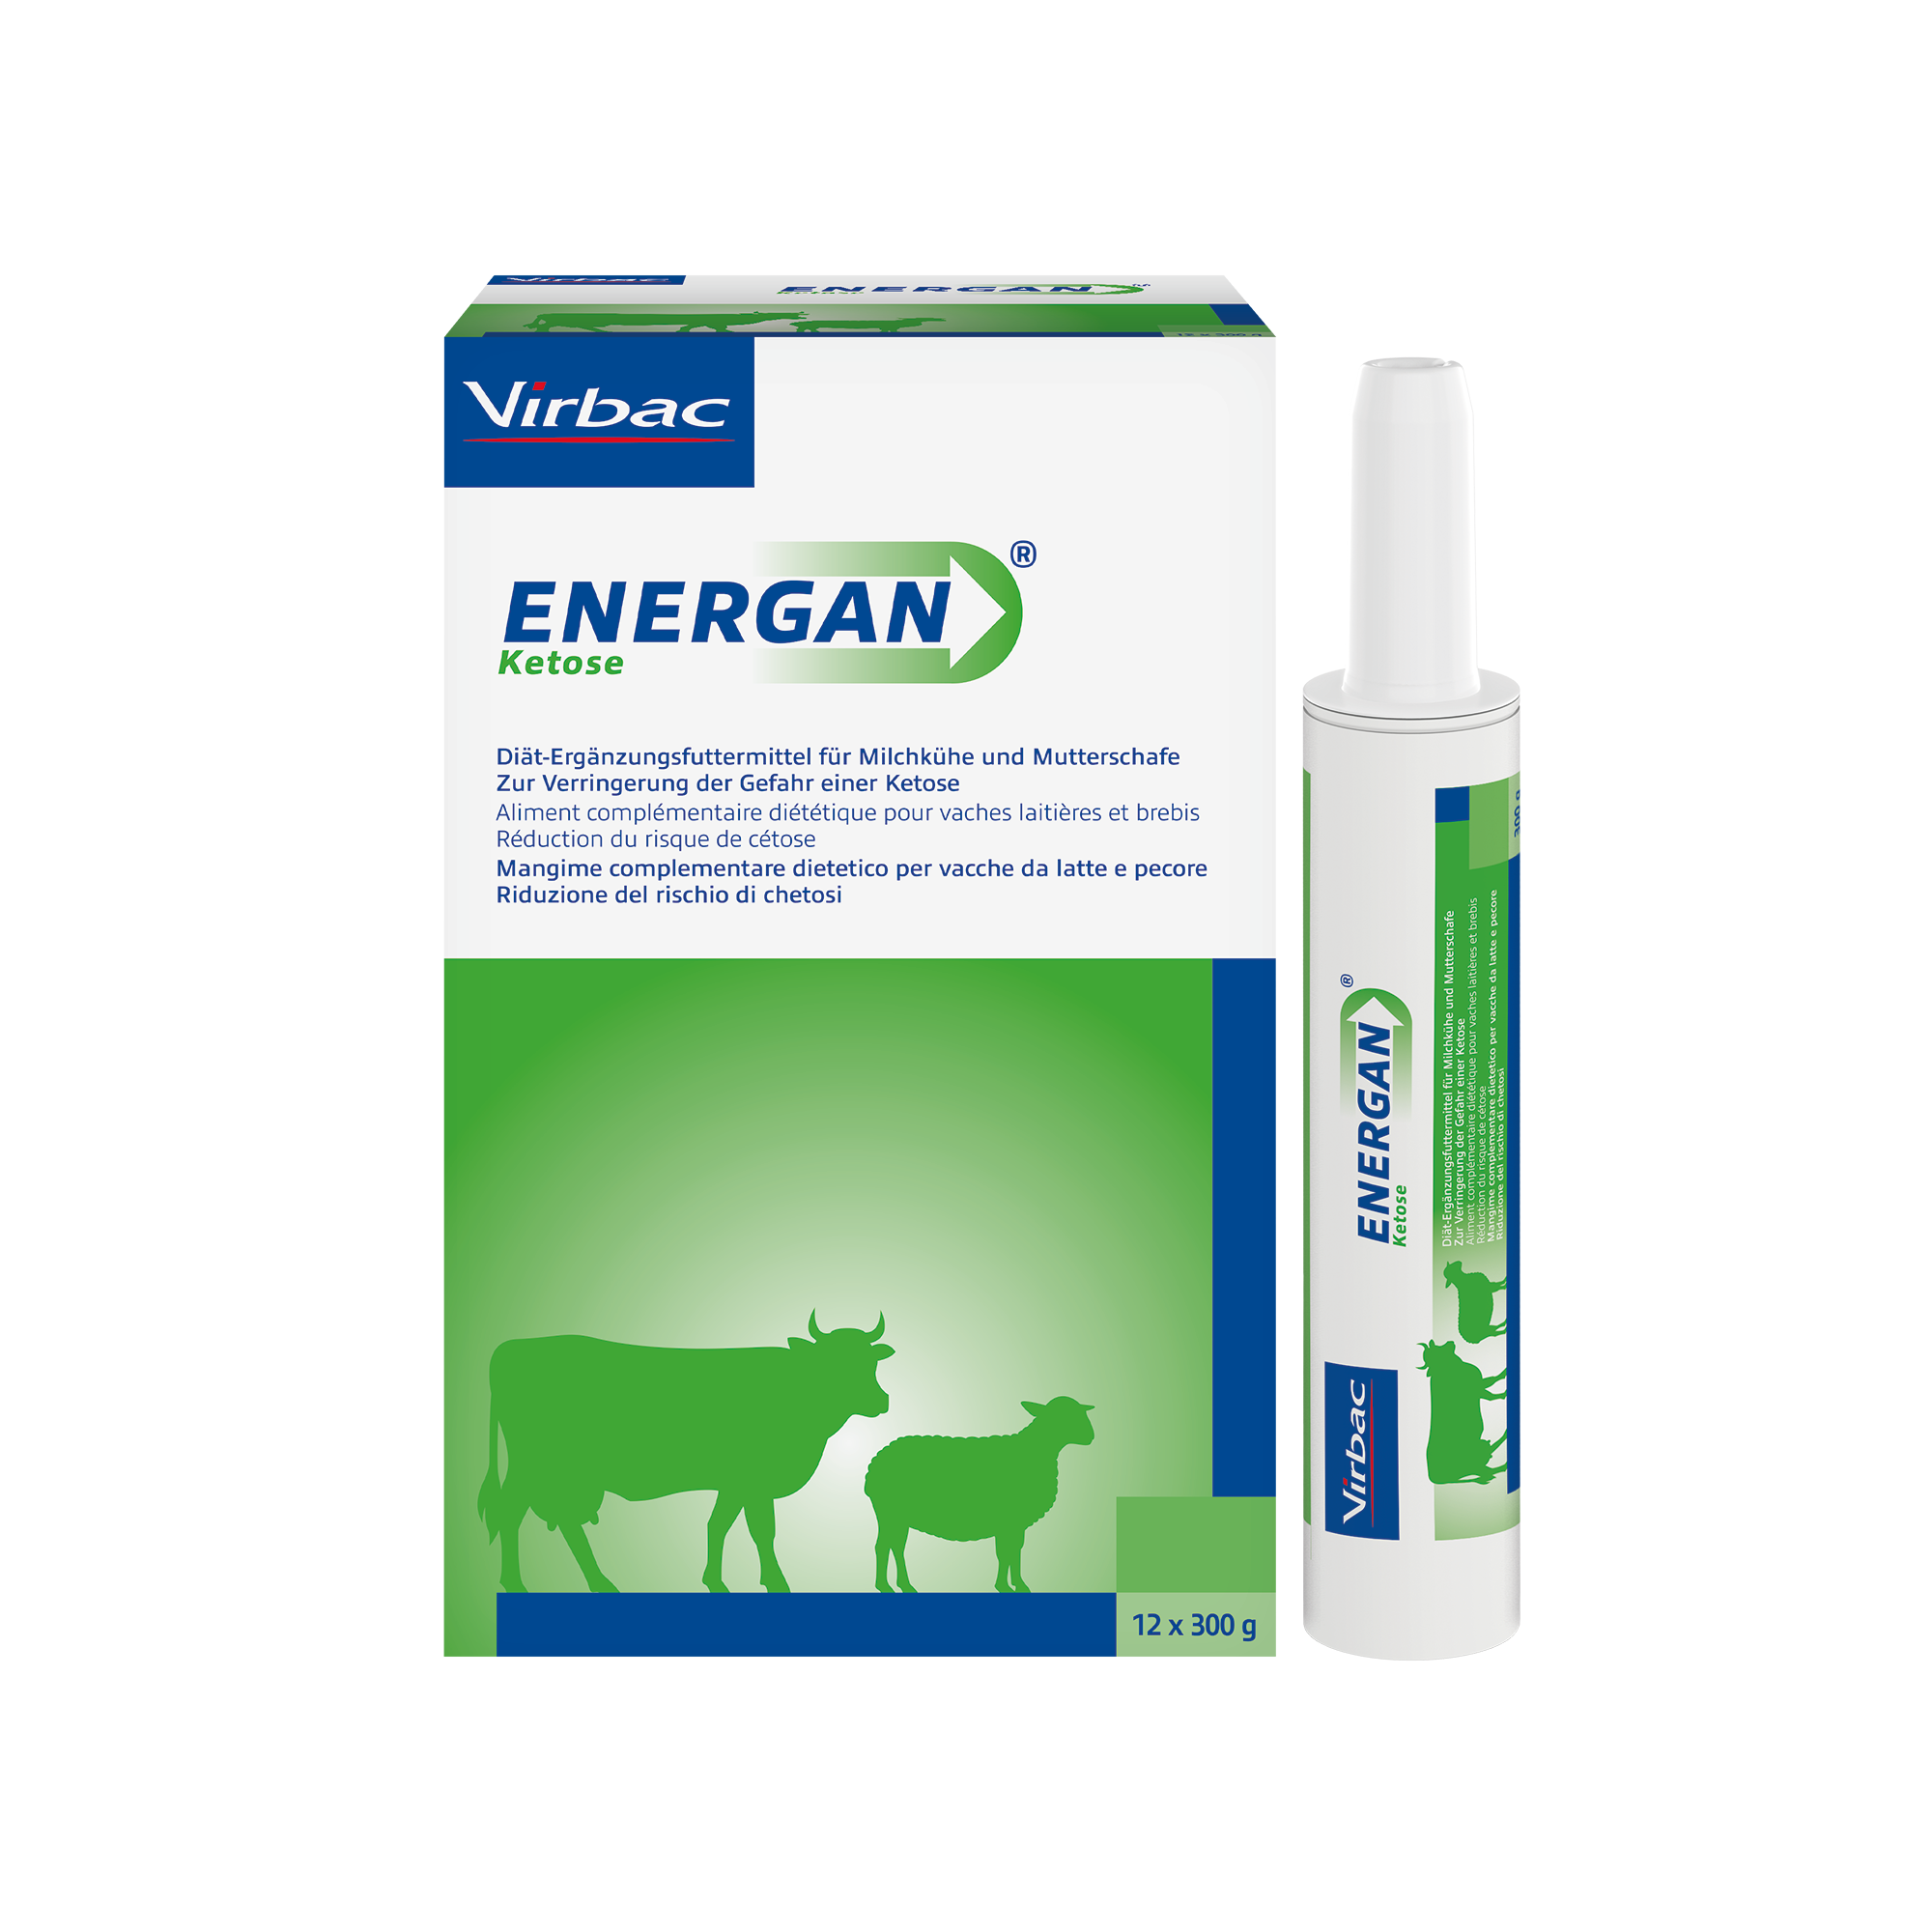 Energan Ketose für Milchkühe und Mutterschafe